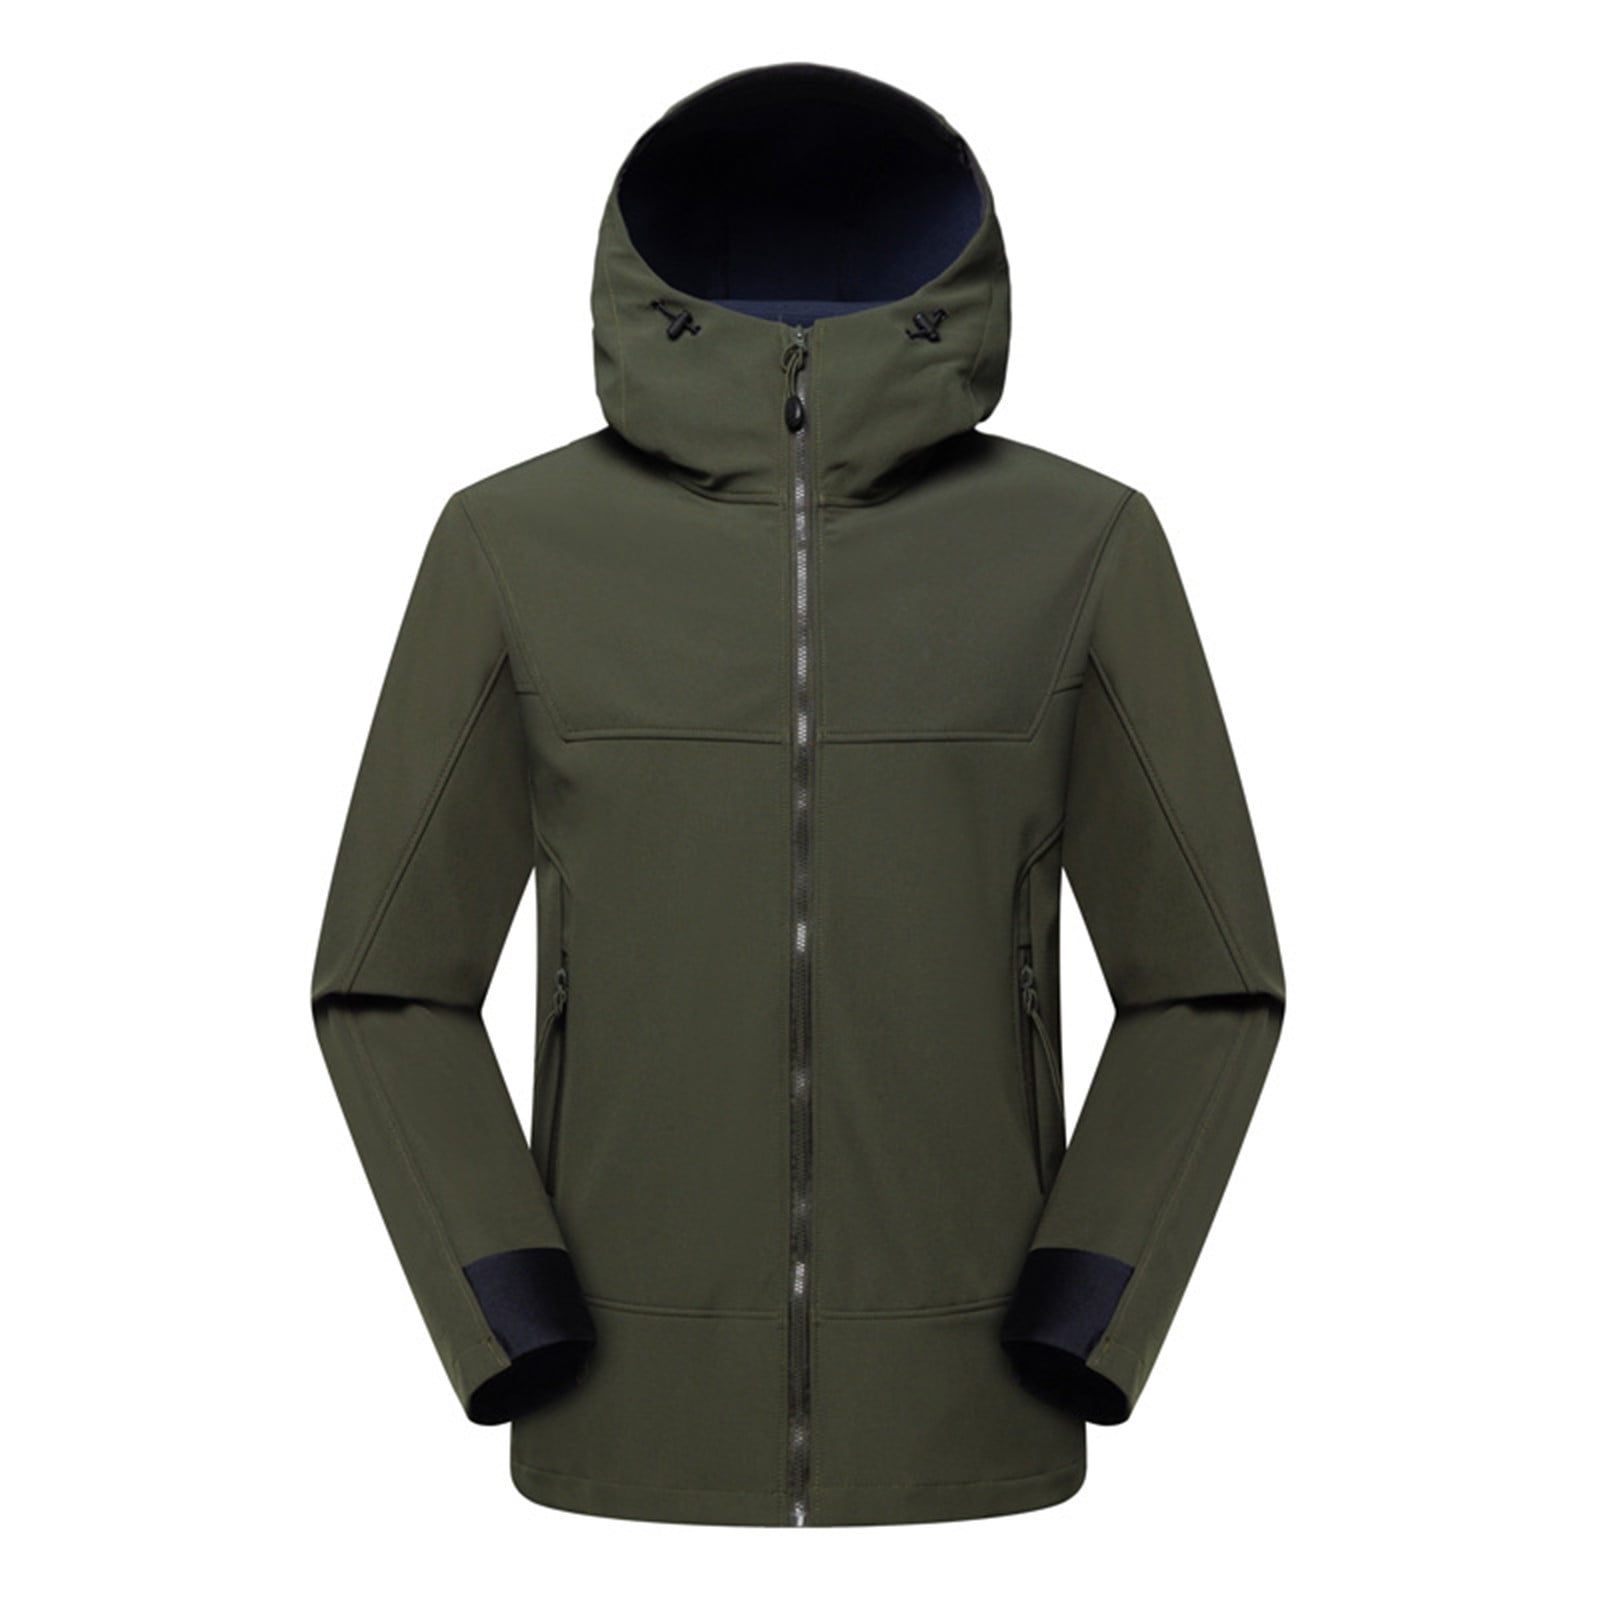 SMihono Deals Women Solid Rain Jacket Outdoor Hooded Raincoat